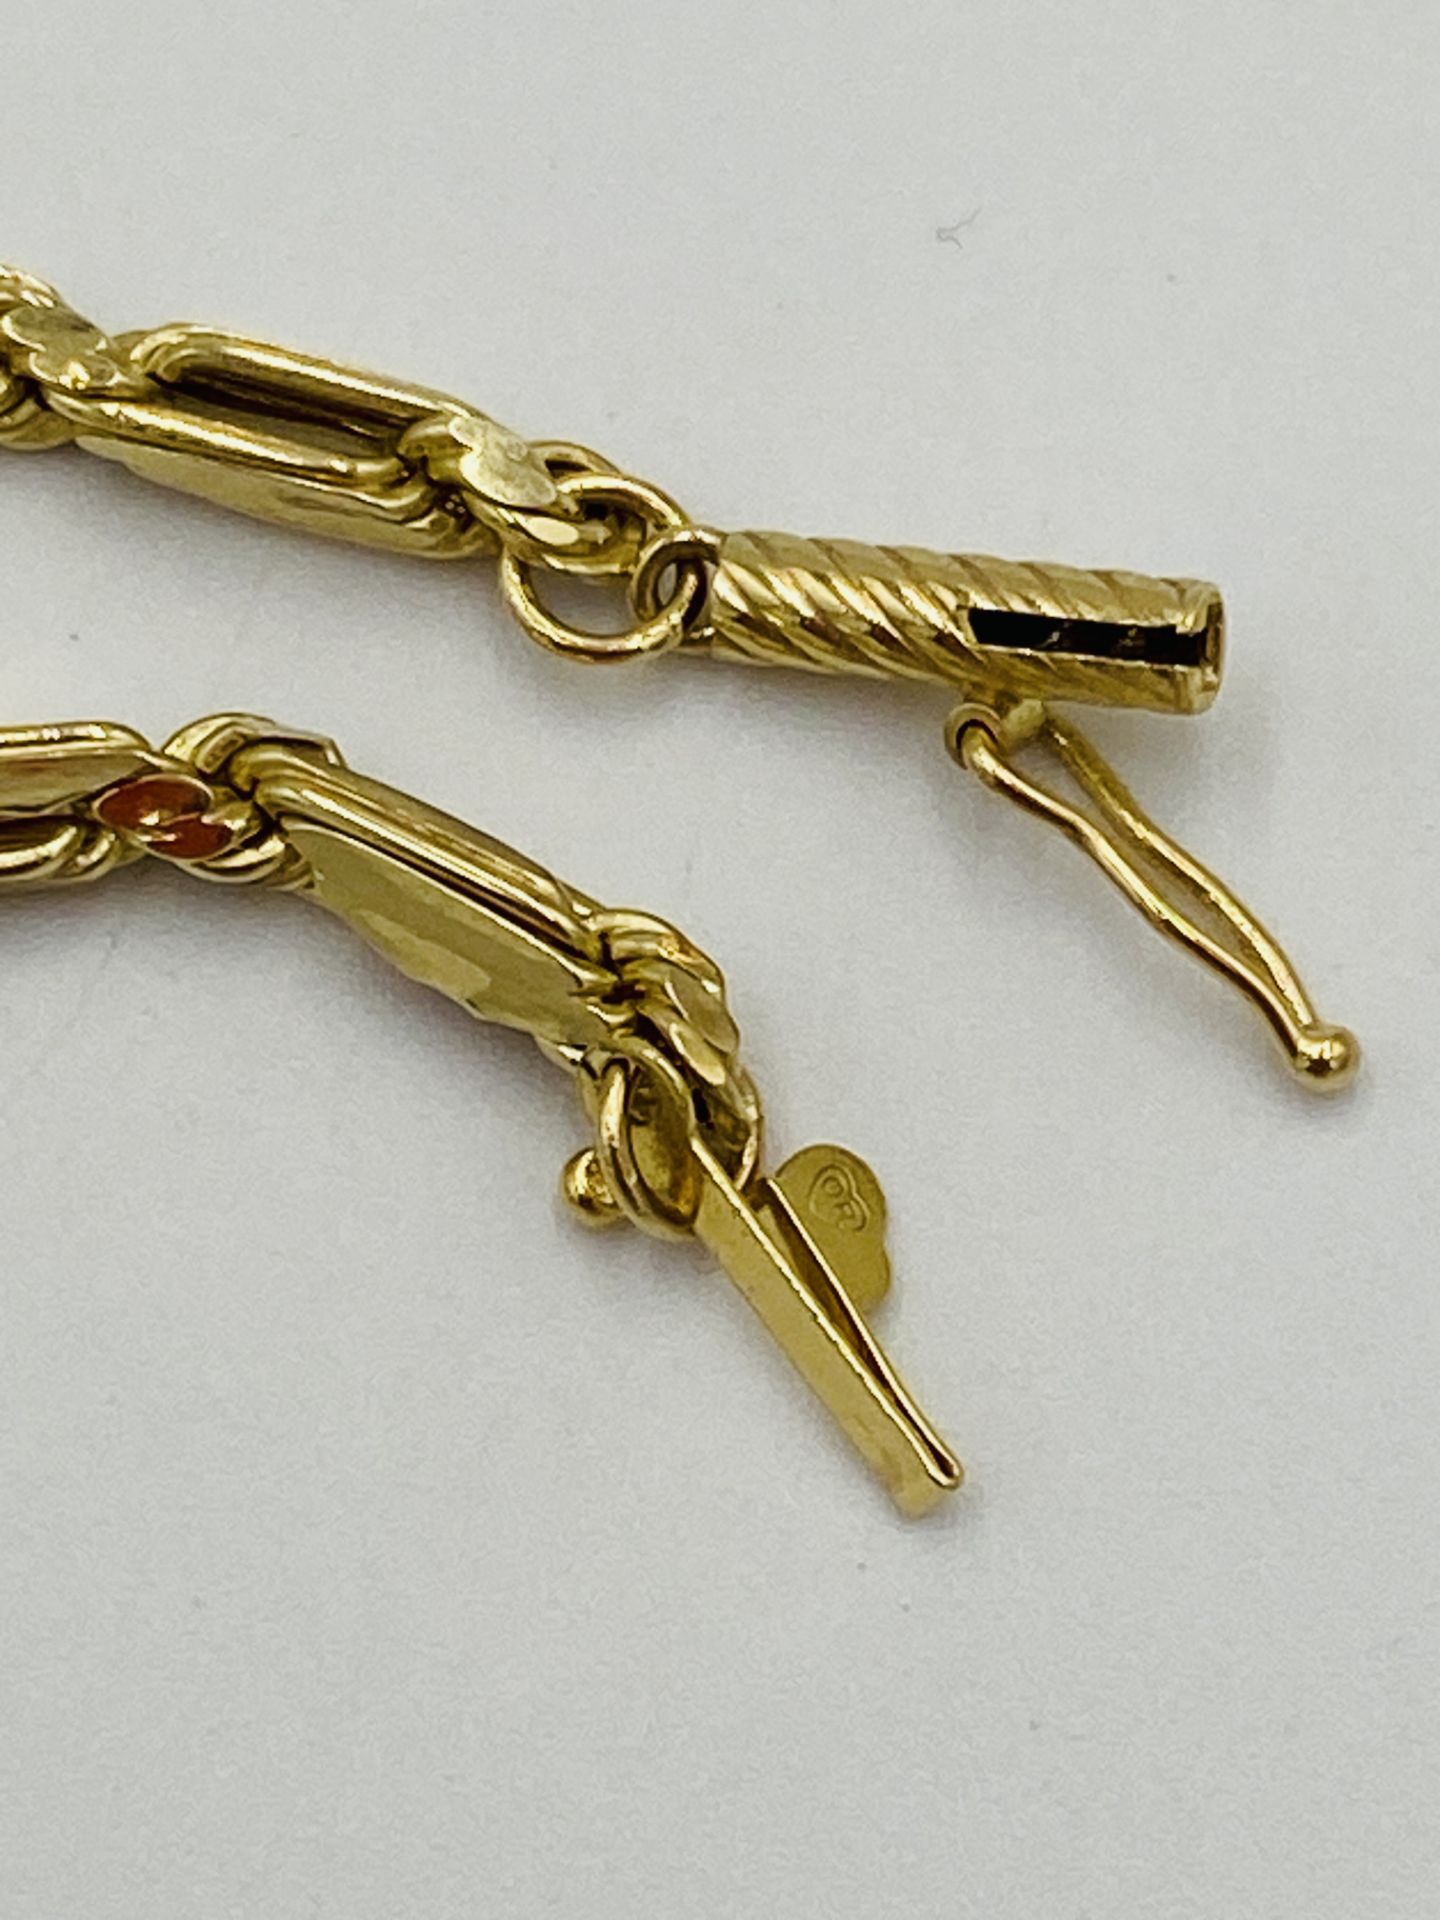 14ct gold bracelet - Image 5 of 5